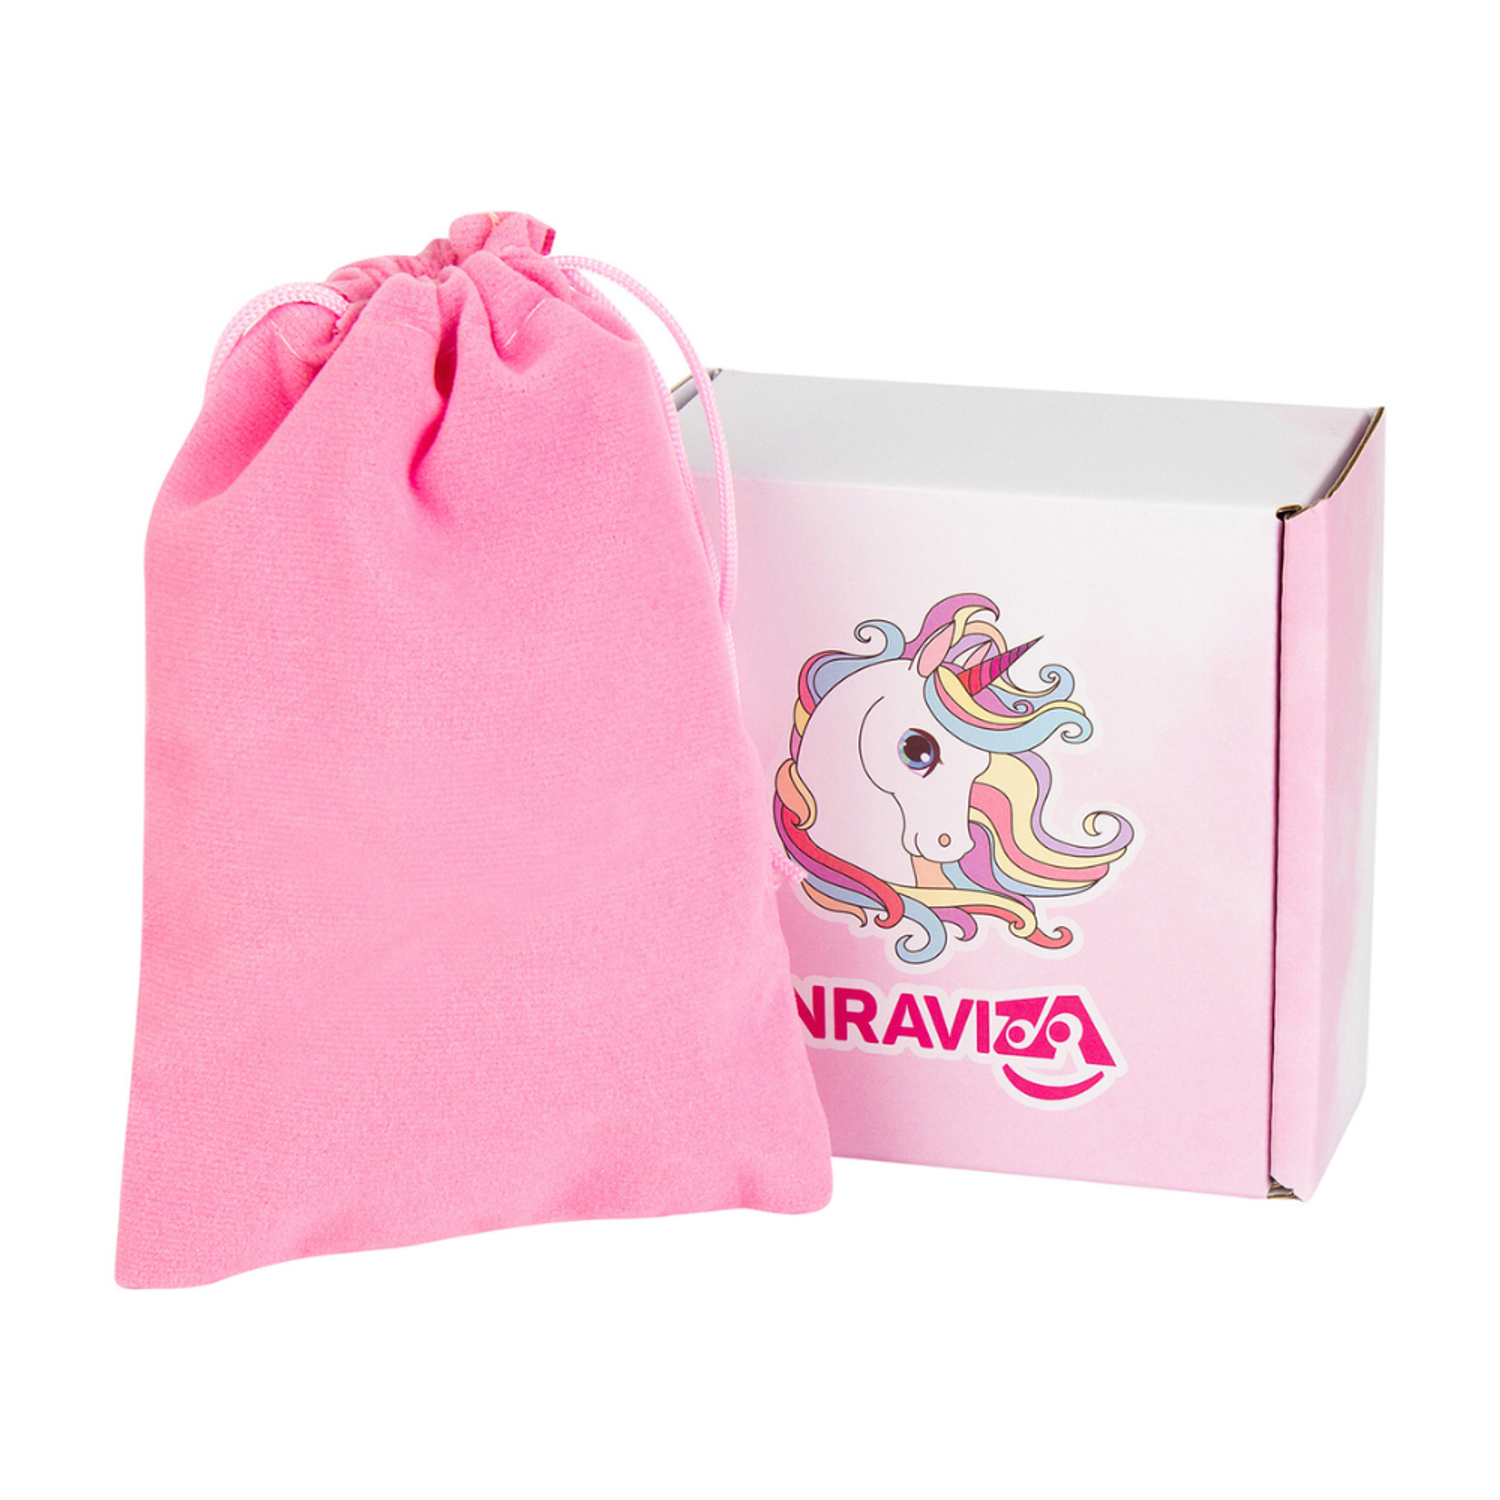 Наборы для создания украшений NRAVIZA Детям браслеты розовые - фото 20